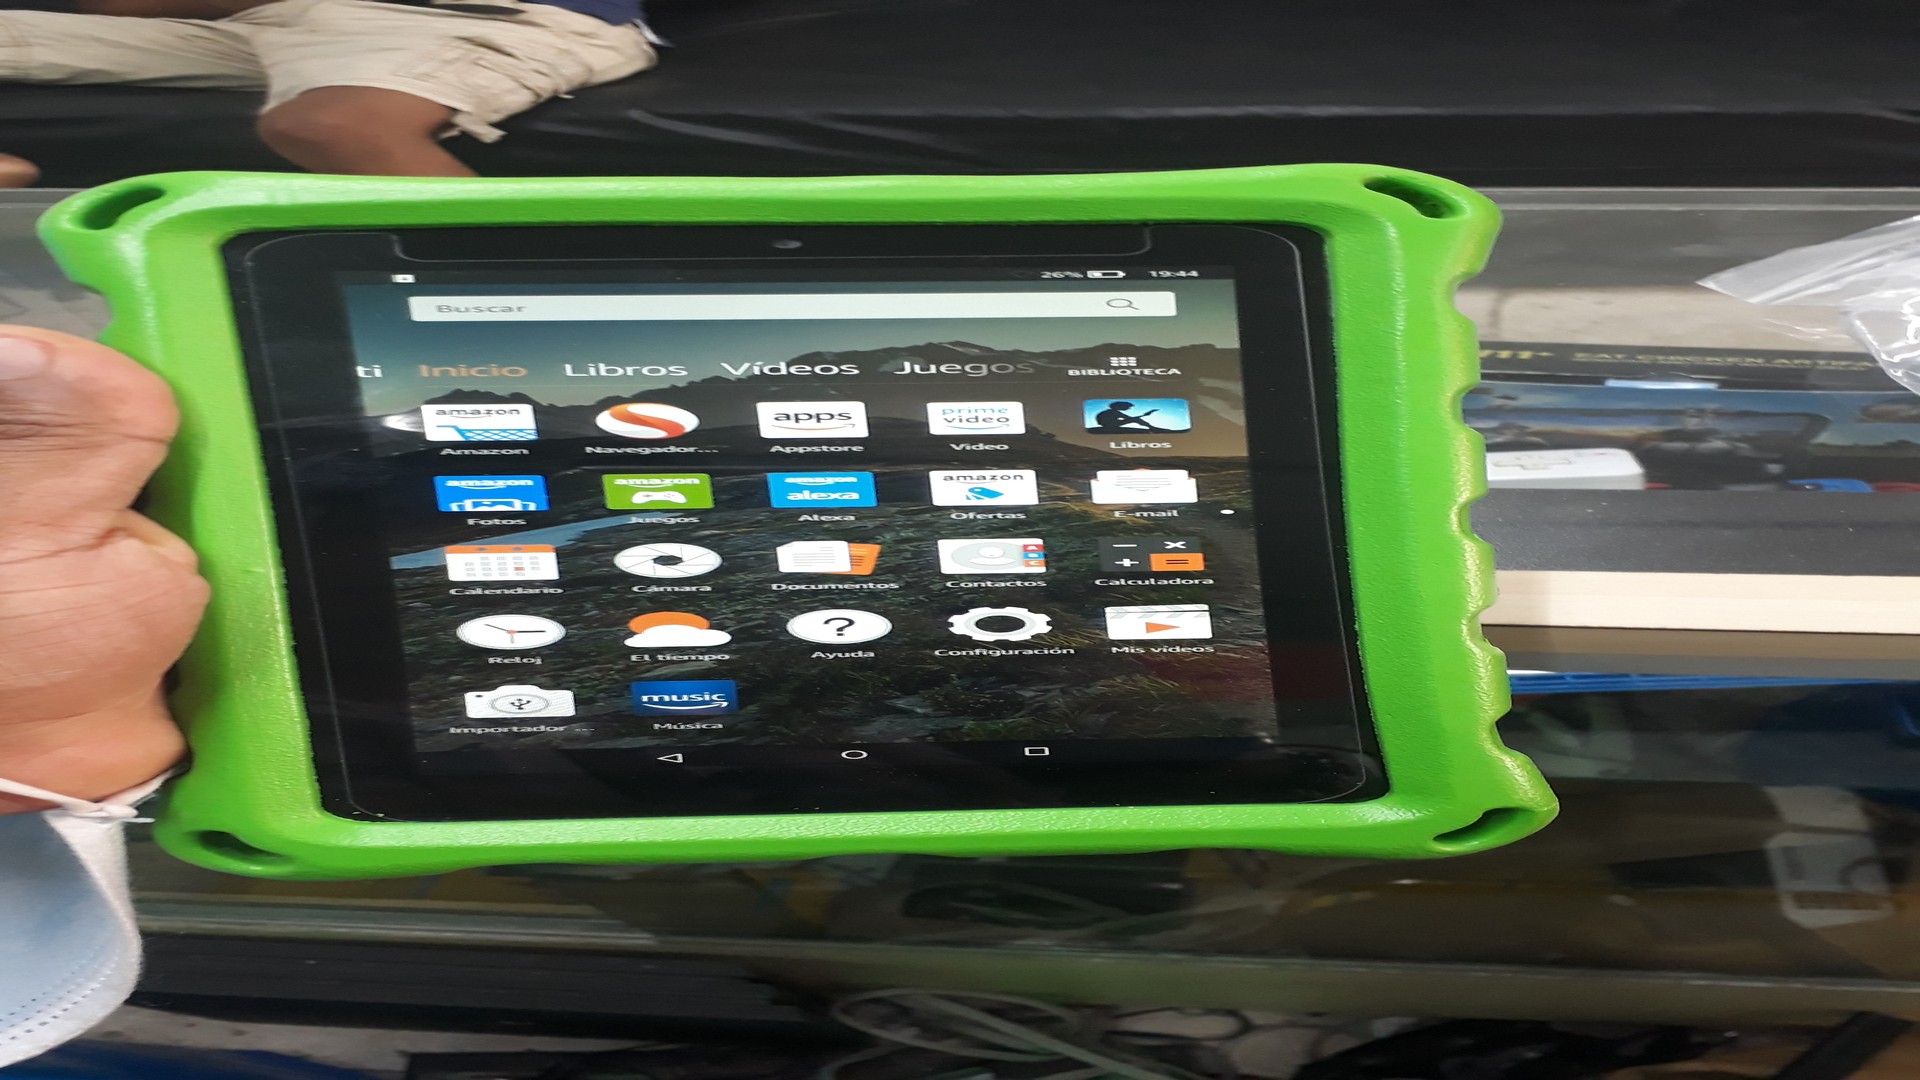 consolas y videojuegos - Tablet amazon fire 7 protector de pantalla cover cargador factura y garantia